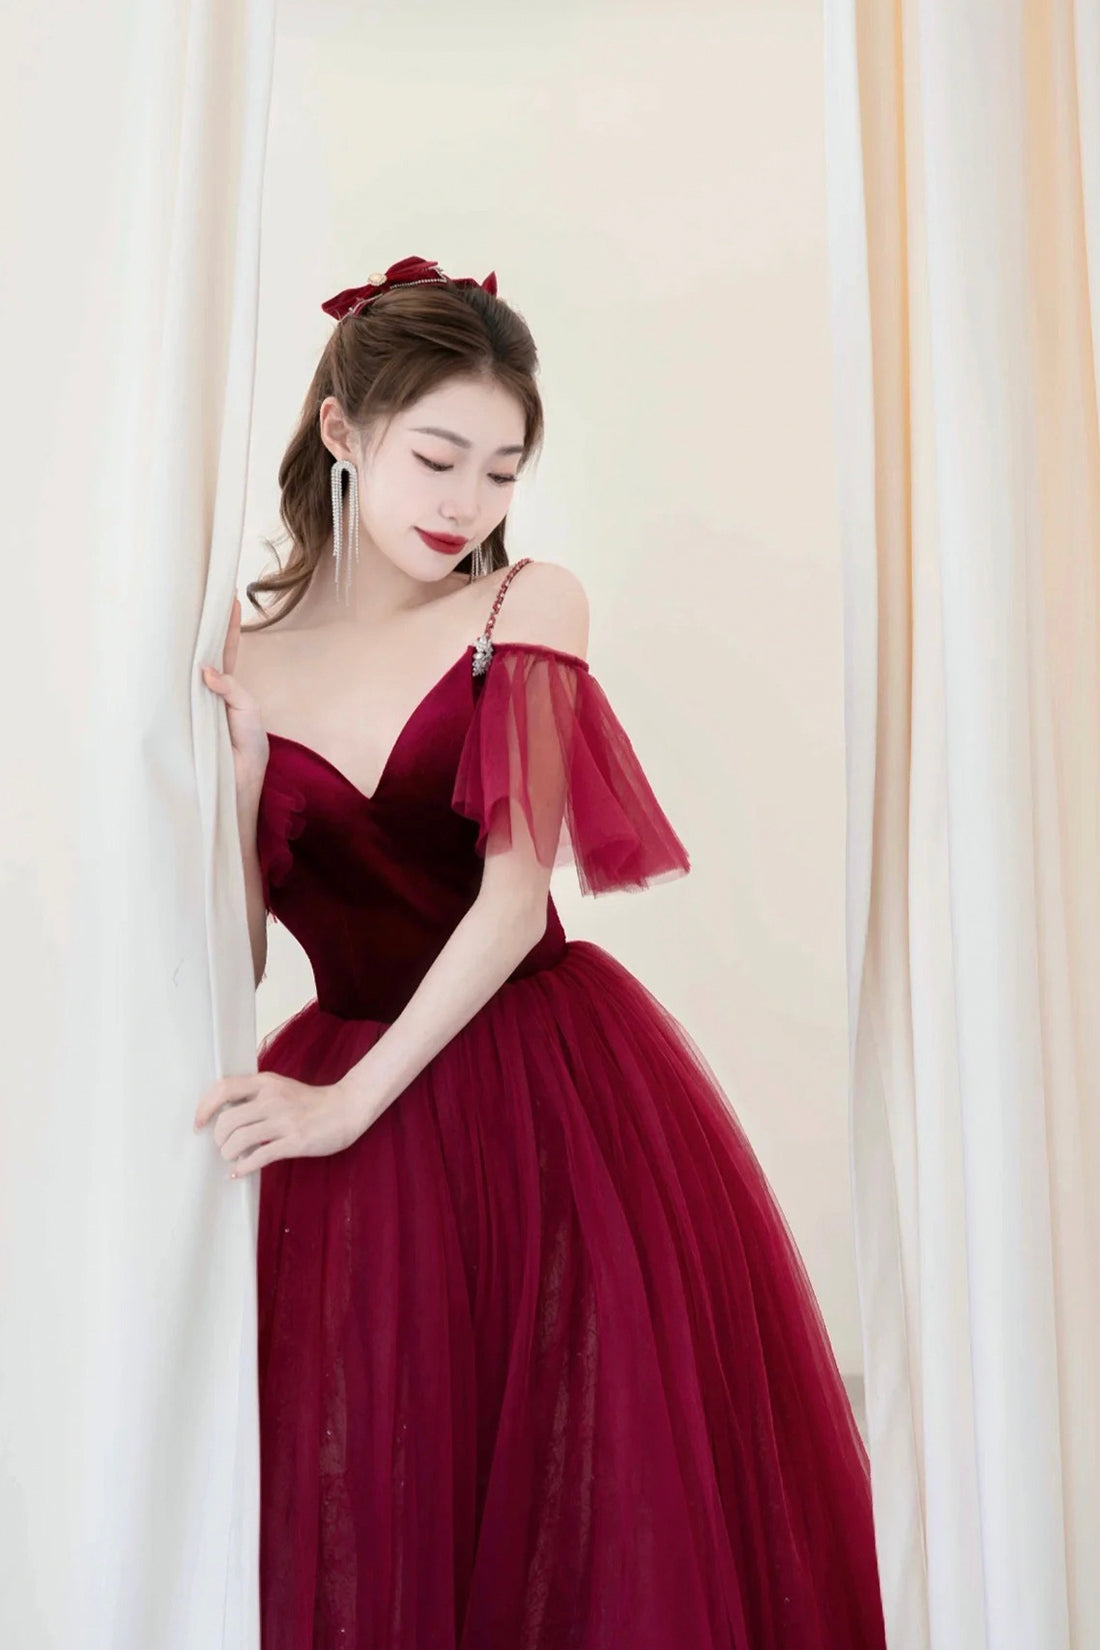 Burgundy V-Neck Velvet and Tulle Long Prom Dress, A-Line Spaghetti Strap Formal Evening Dress